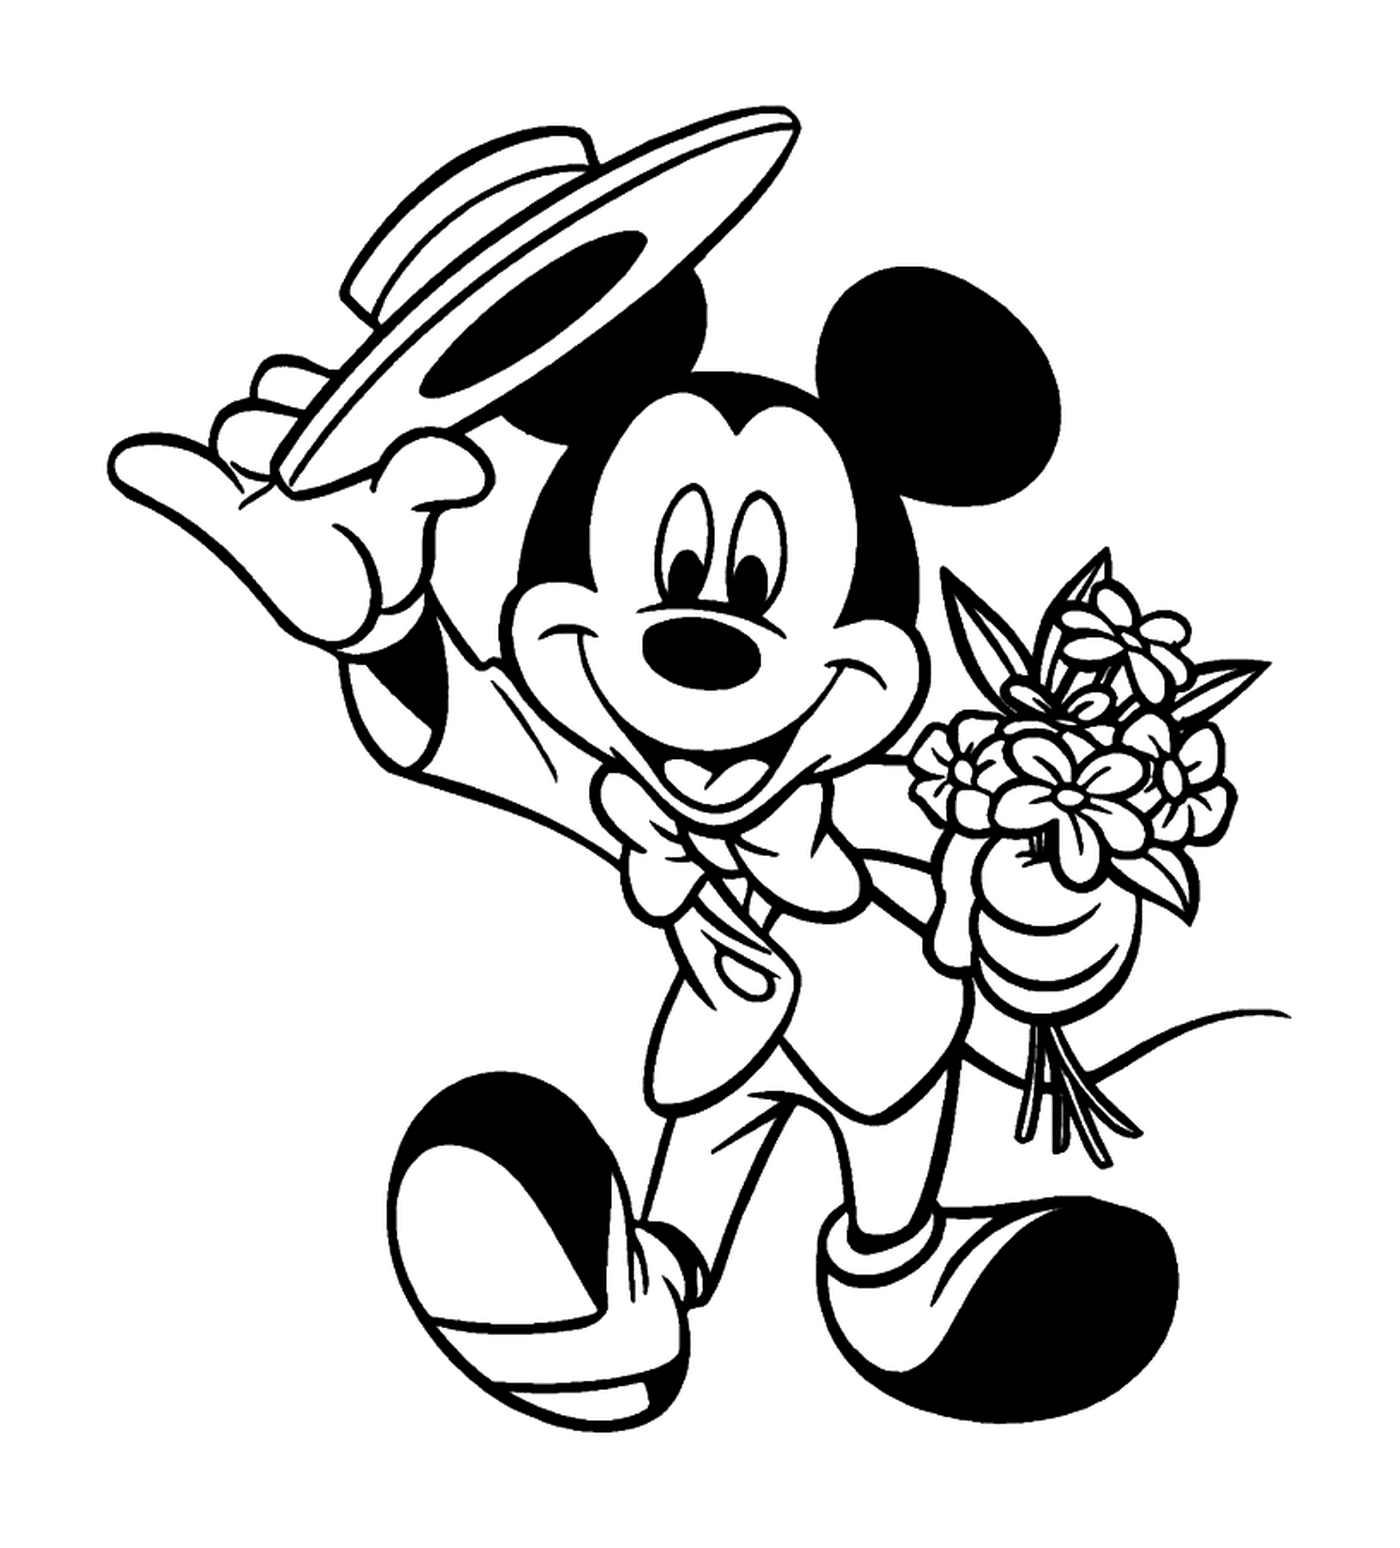  Mickey geht zu einem galanten Datum: einen Strauß halten 